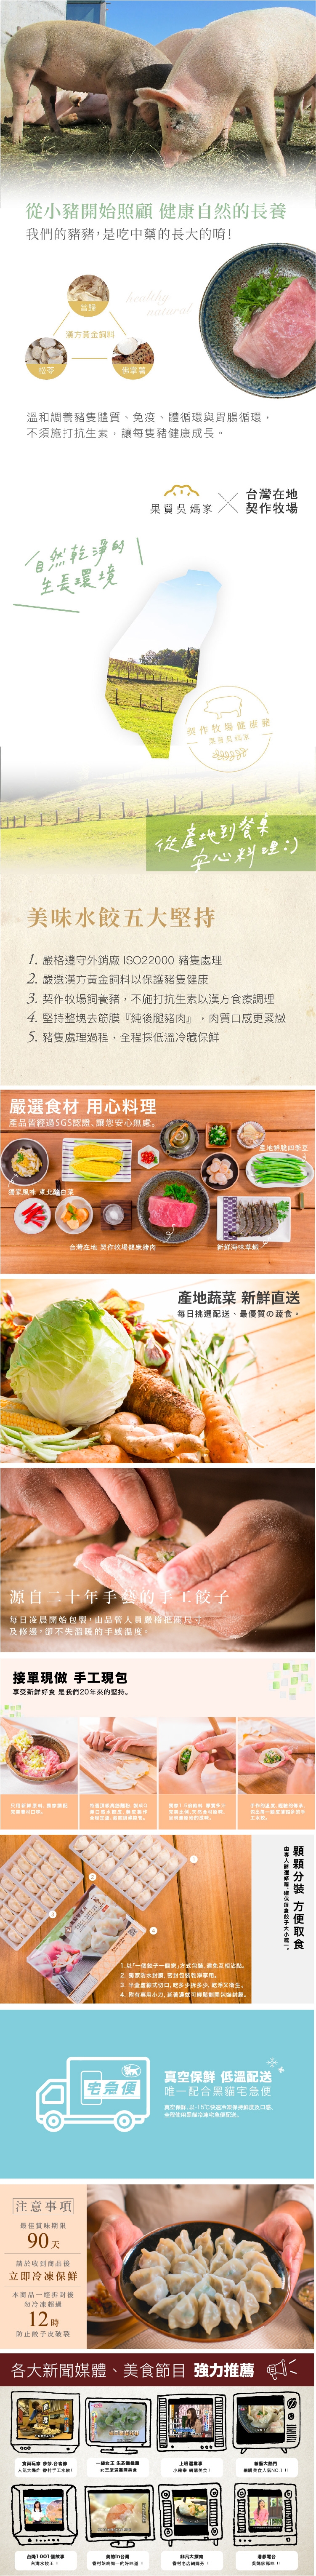 果貿吳媽家韓式泡菜鮮肉水餃(1盒/24入)